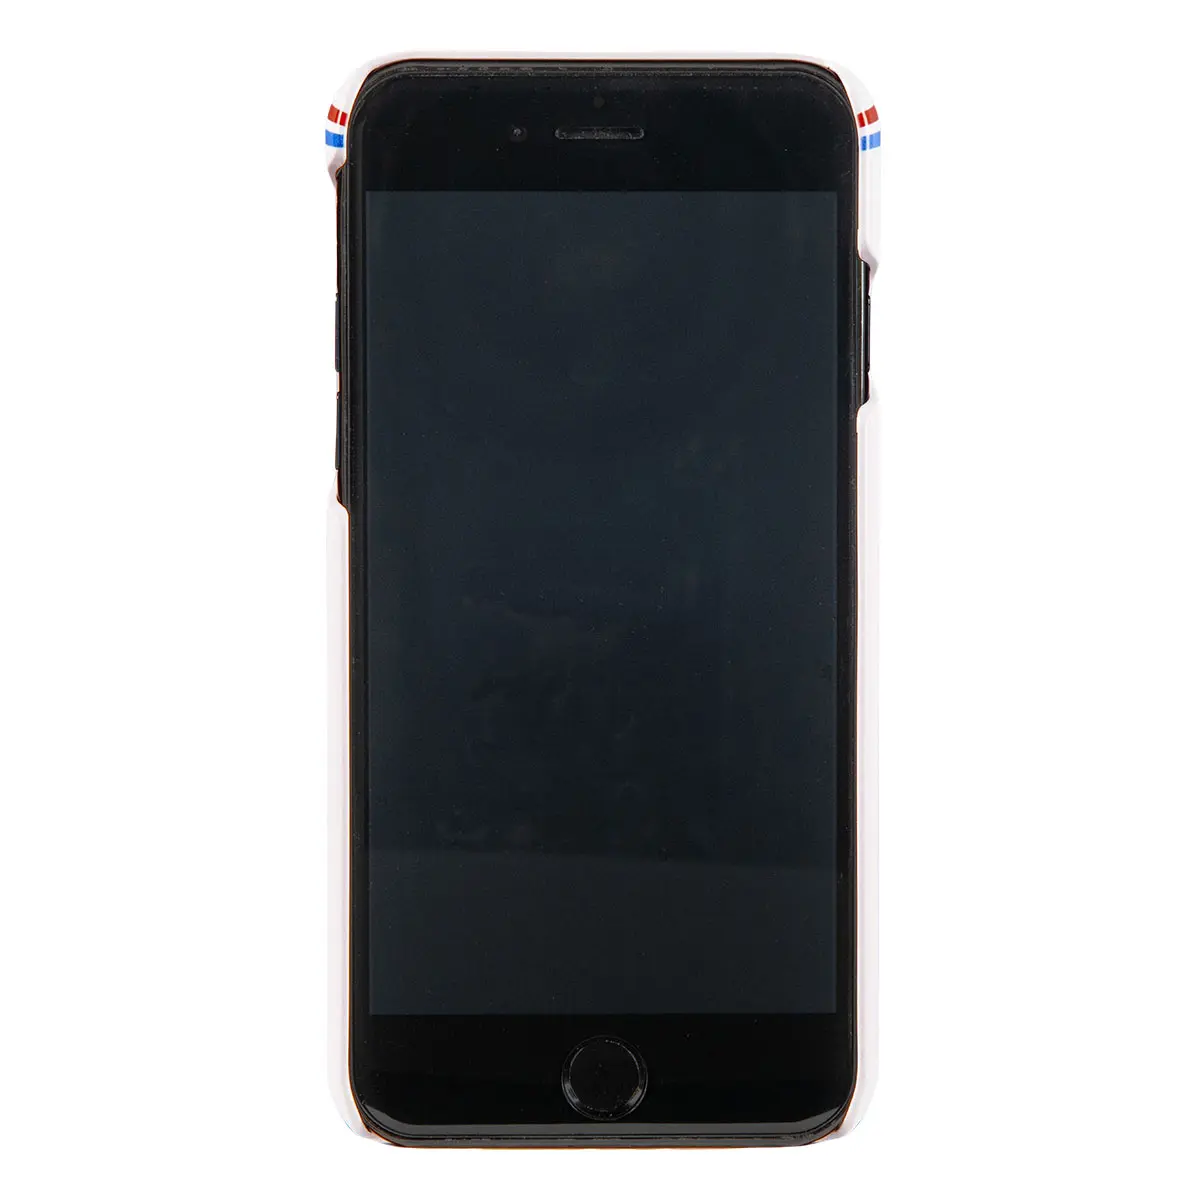 オサム グッズ スマホケース 『AIR WAYS』かわいいハード型 iphone 